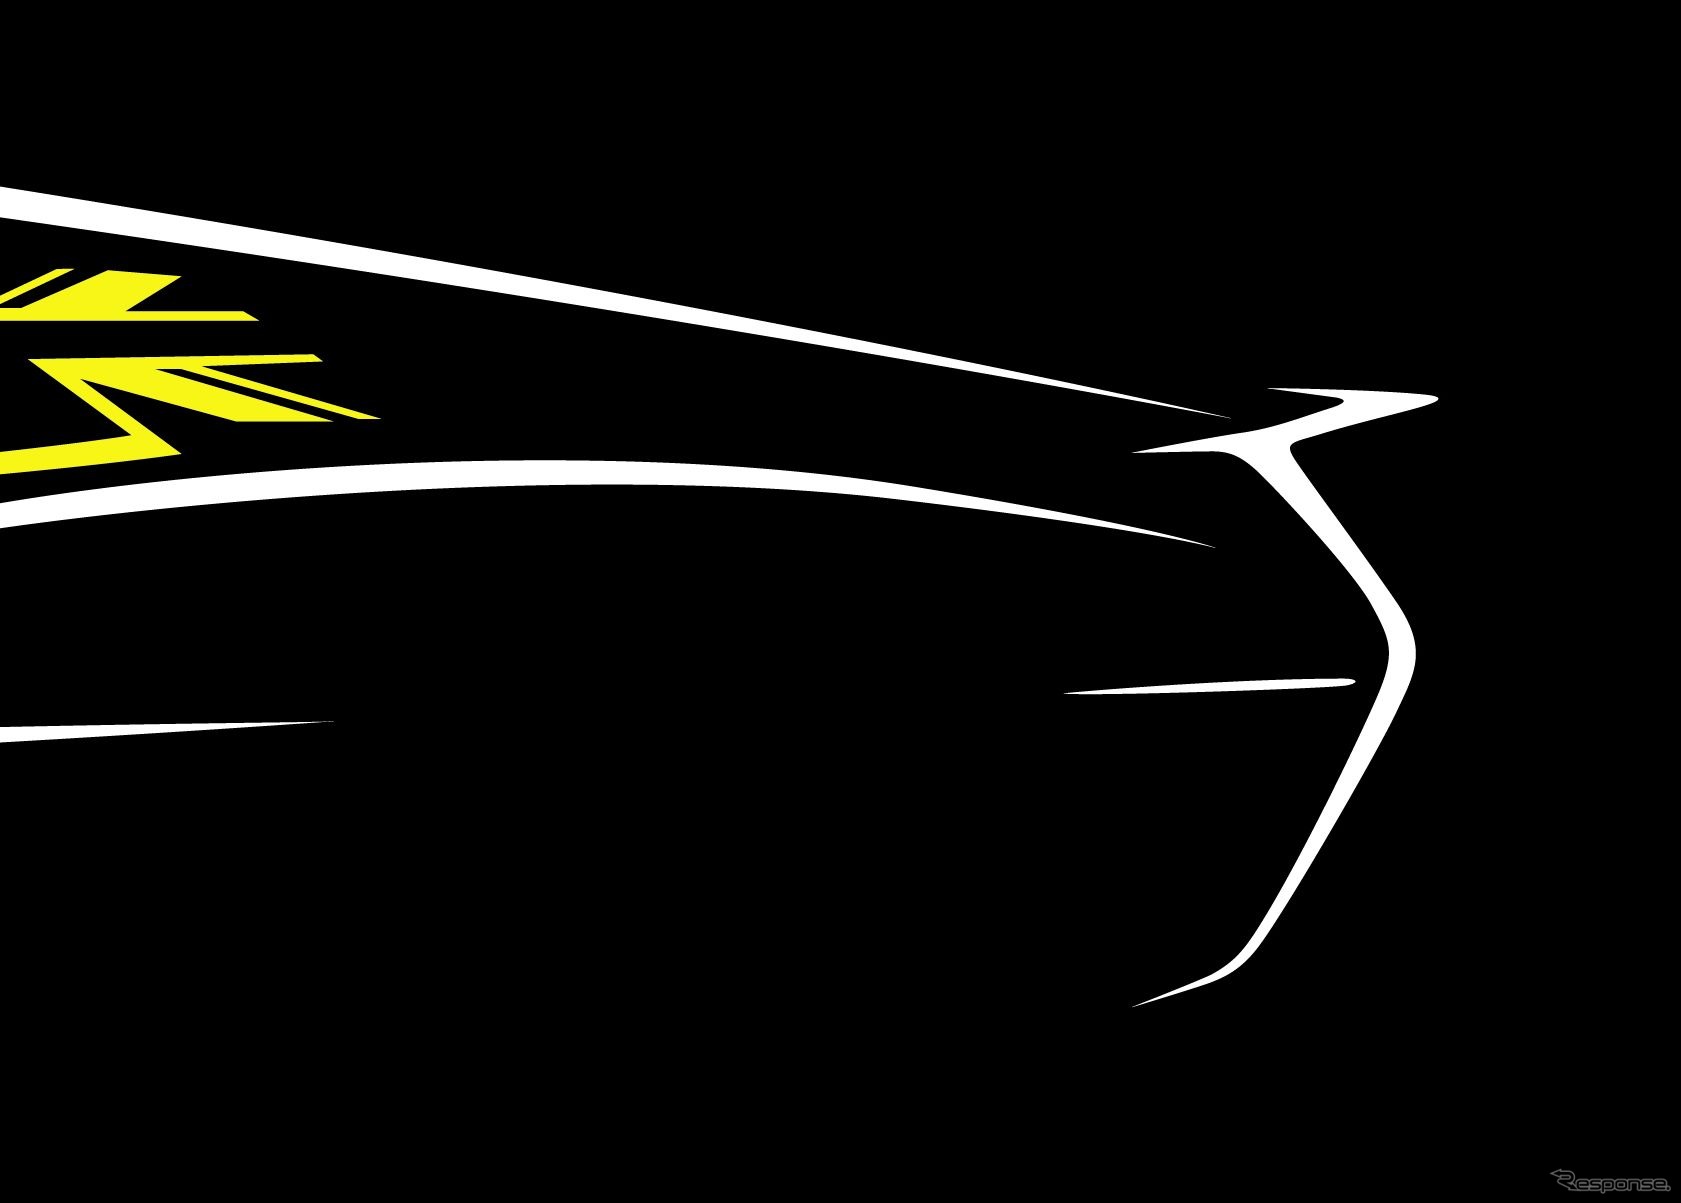 ロータスカーズの次世代EVスポーツのスケッチ